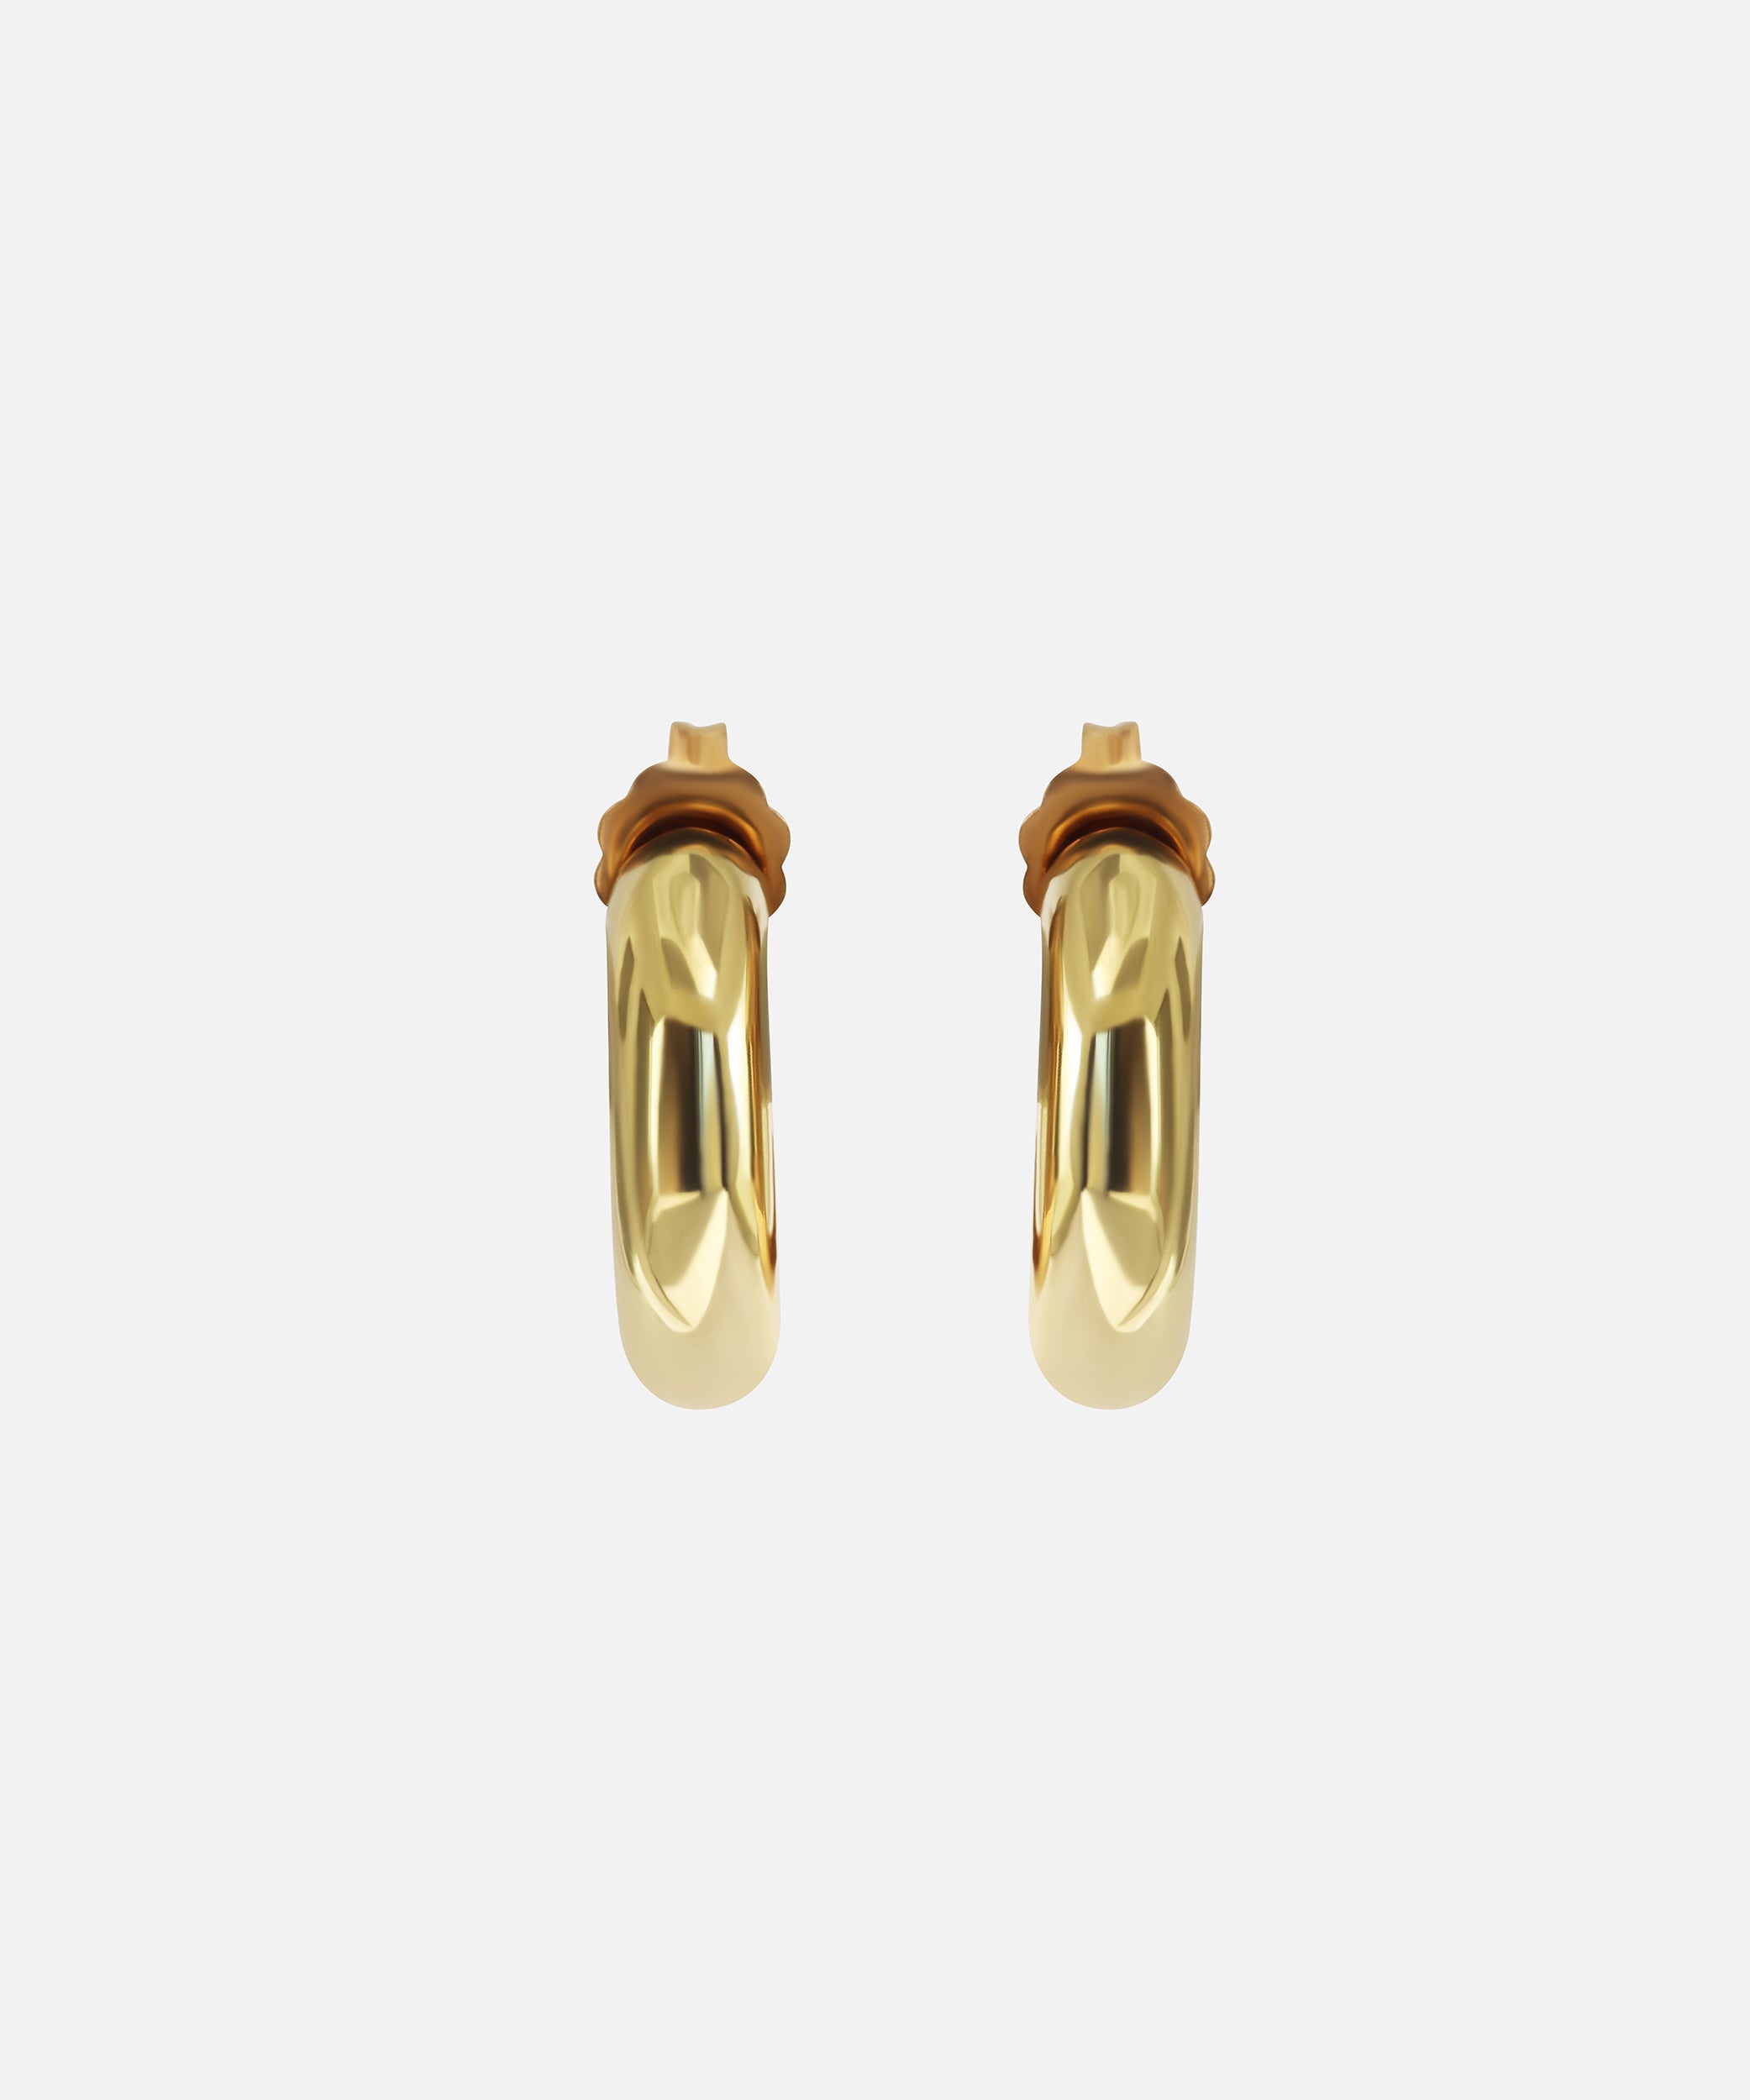 Gold Hoops By Bree Altman in earrings Category